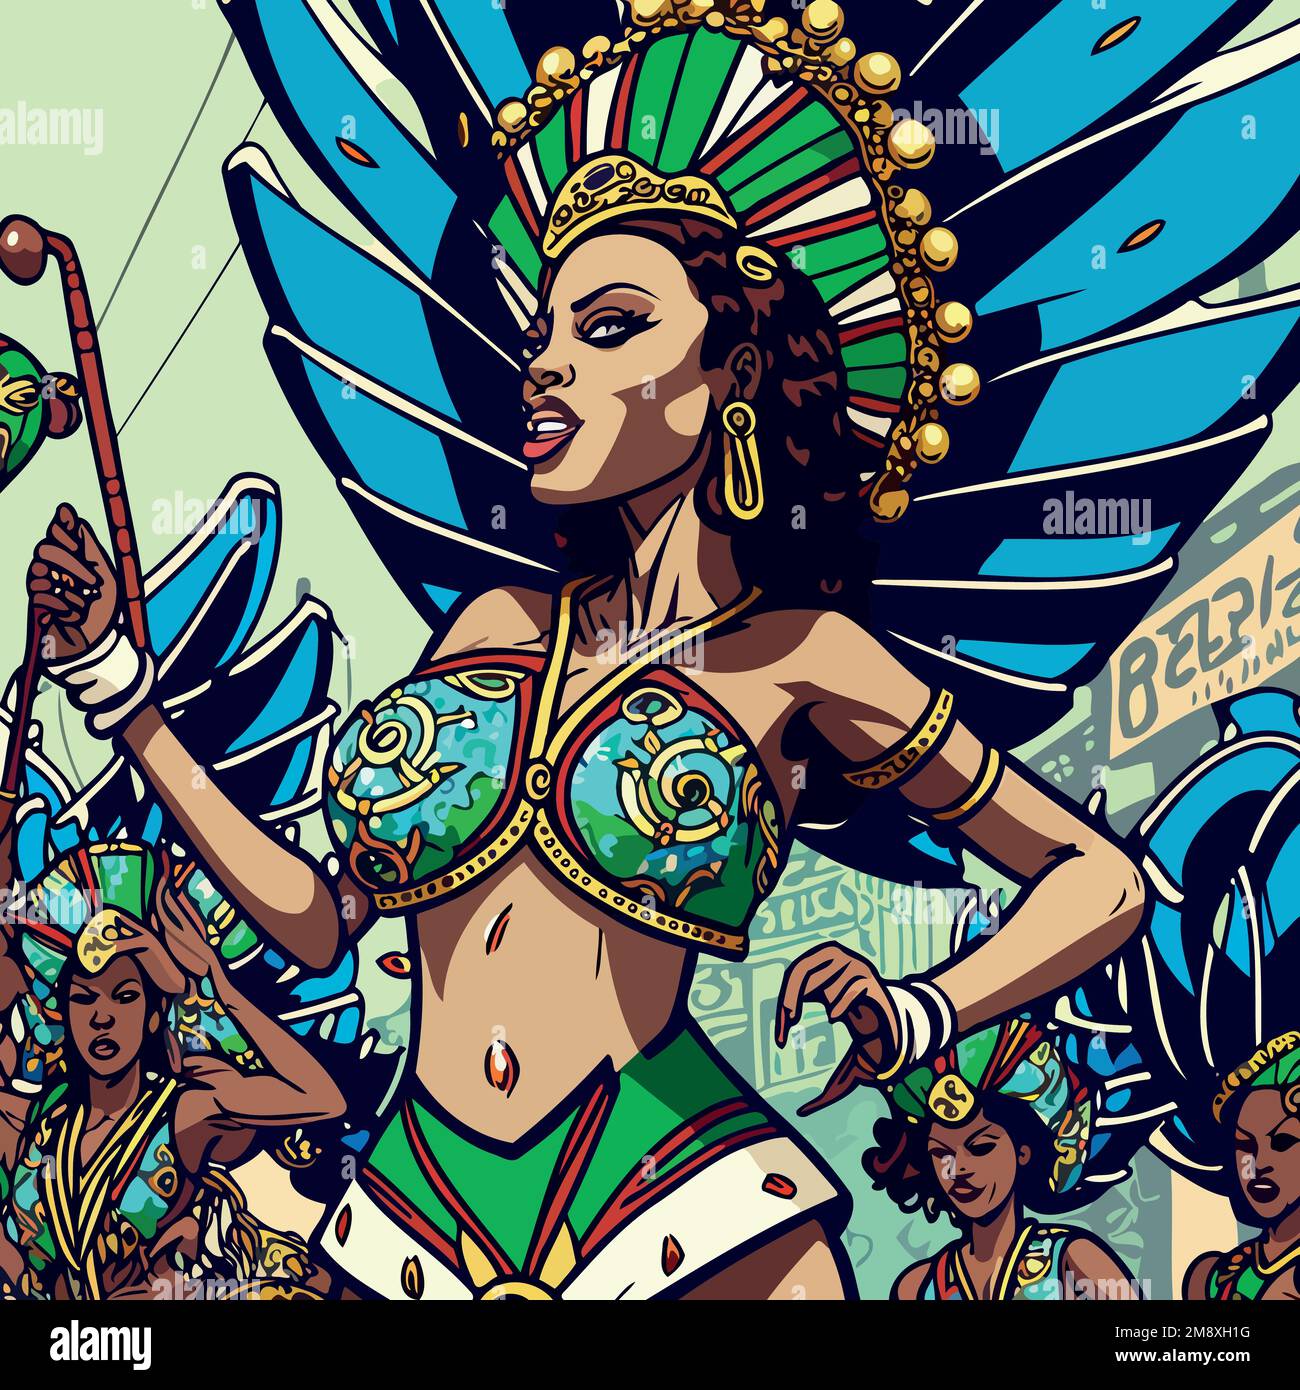 Illustration d'un personnage fictif costumé représentant une école de samba fictive au carnaval brésilien Illustration de Vecteur